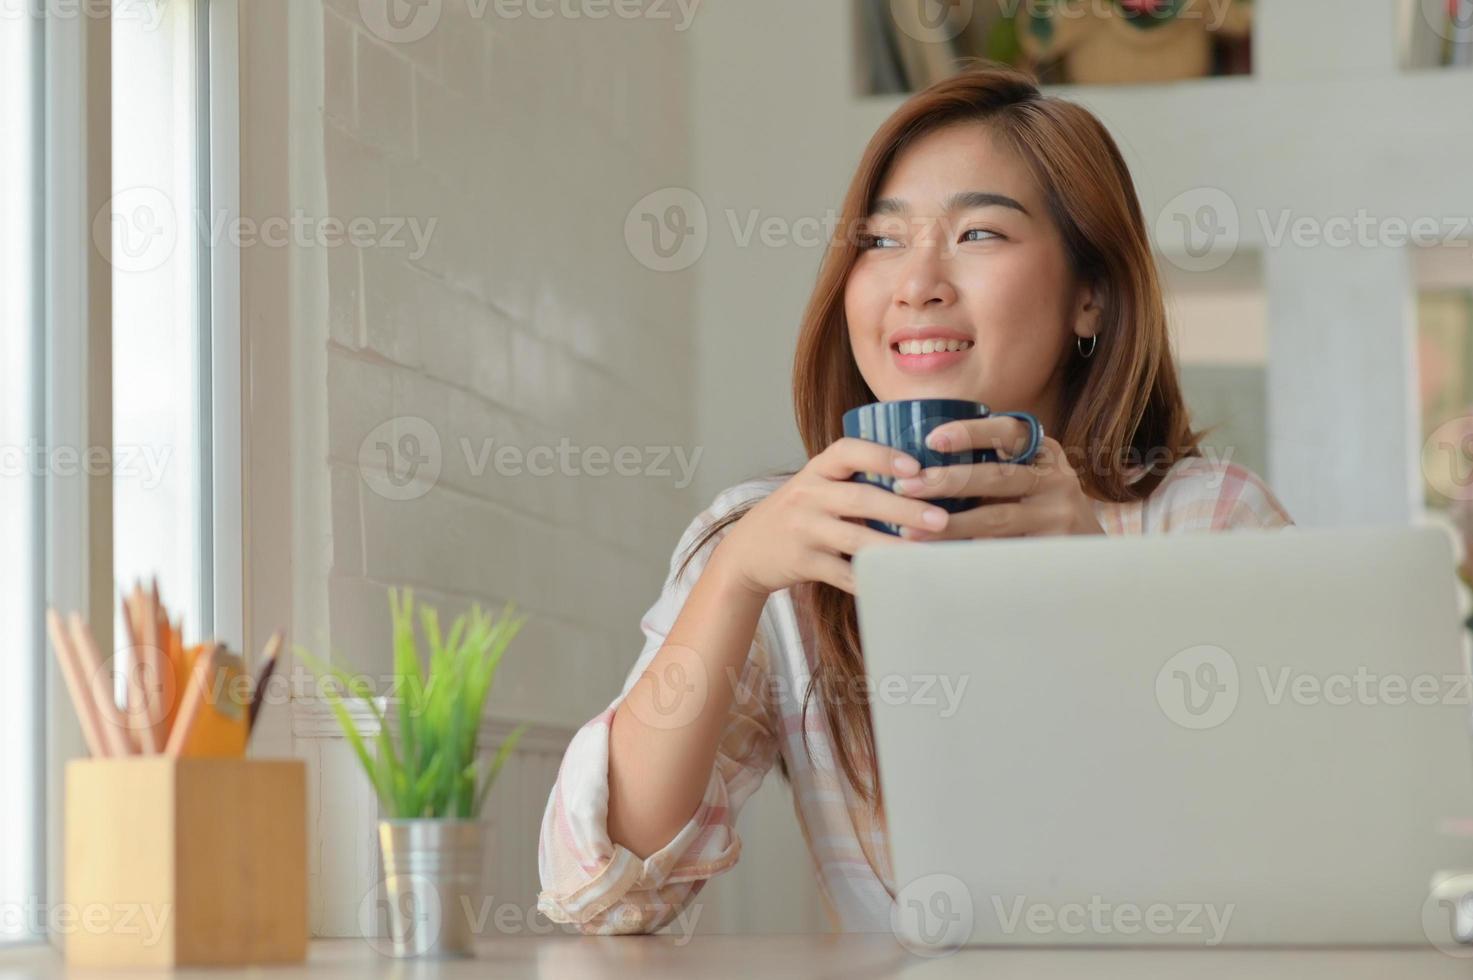 un portrait d'une femme asiatique sourit joyeusement avec une tasse de café pendant une pause de travail dans un bureau confortable. photo